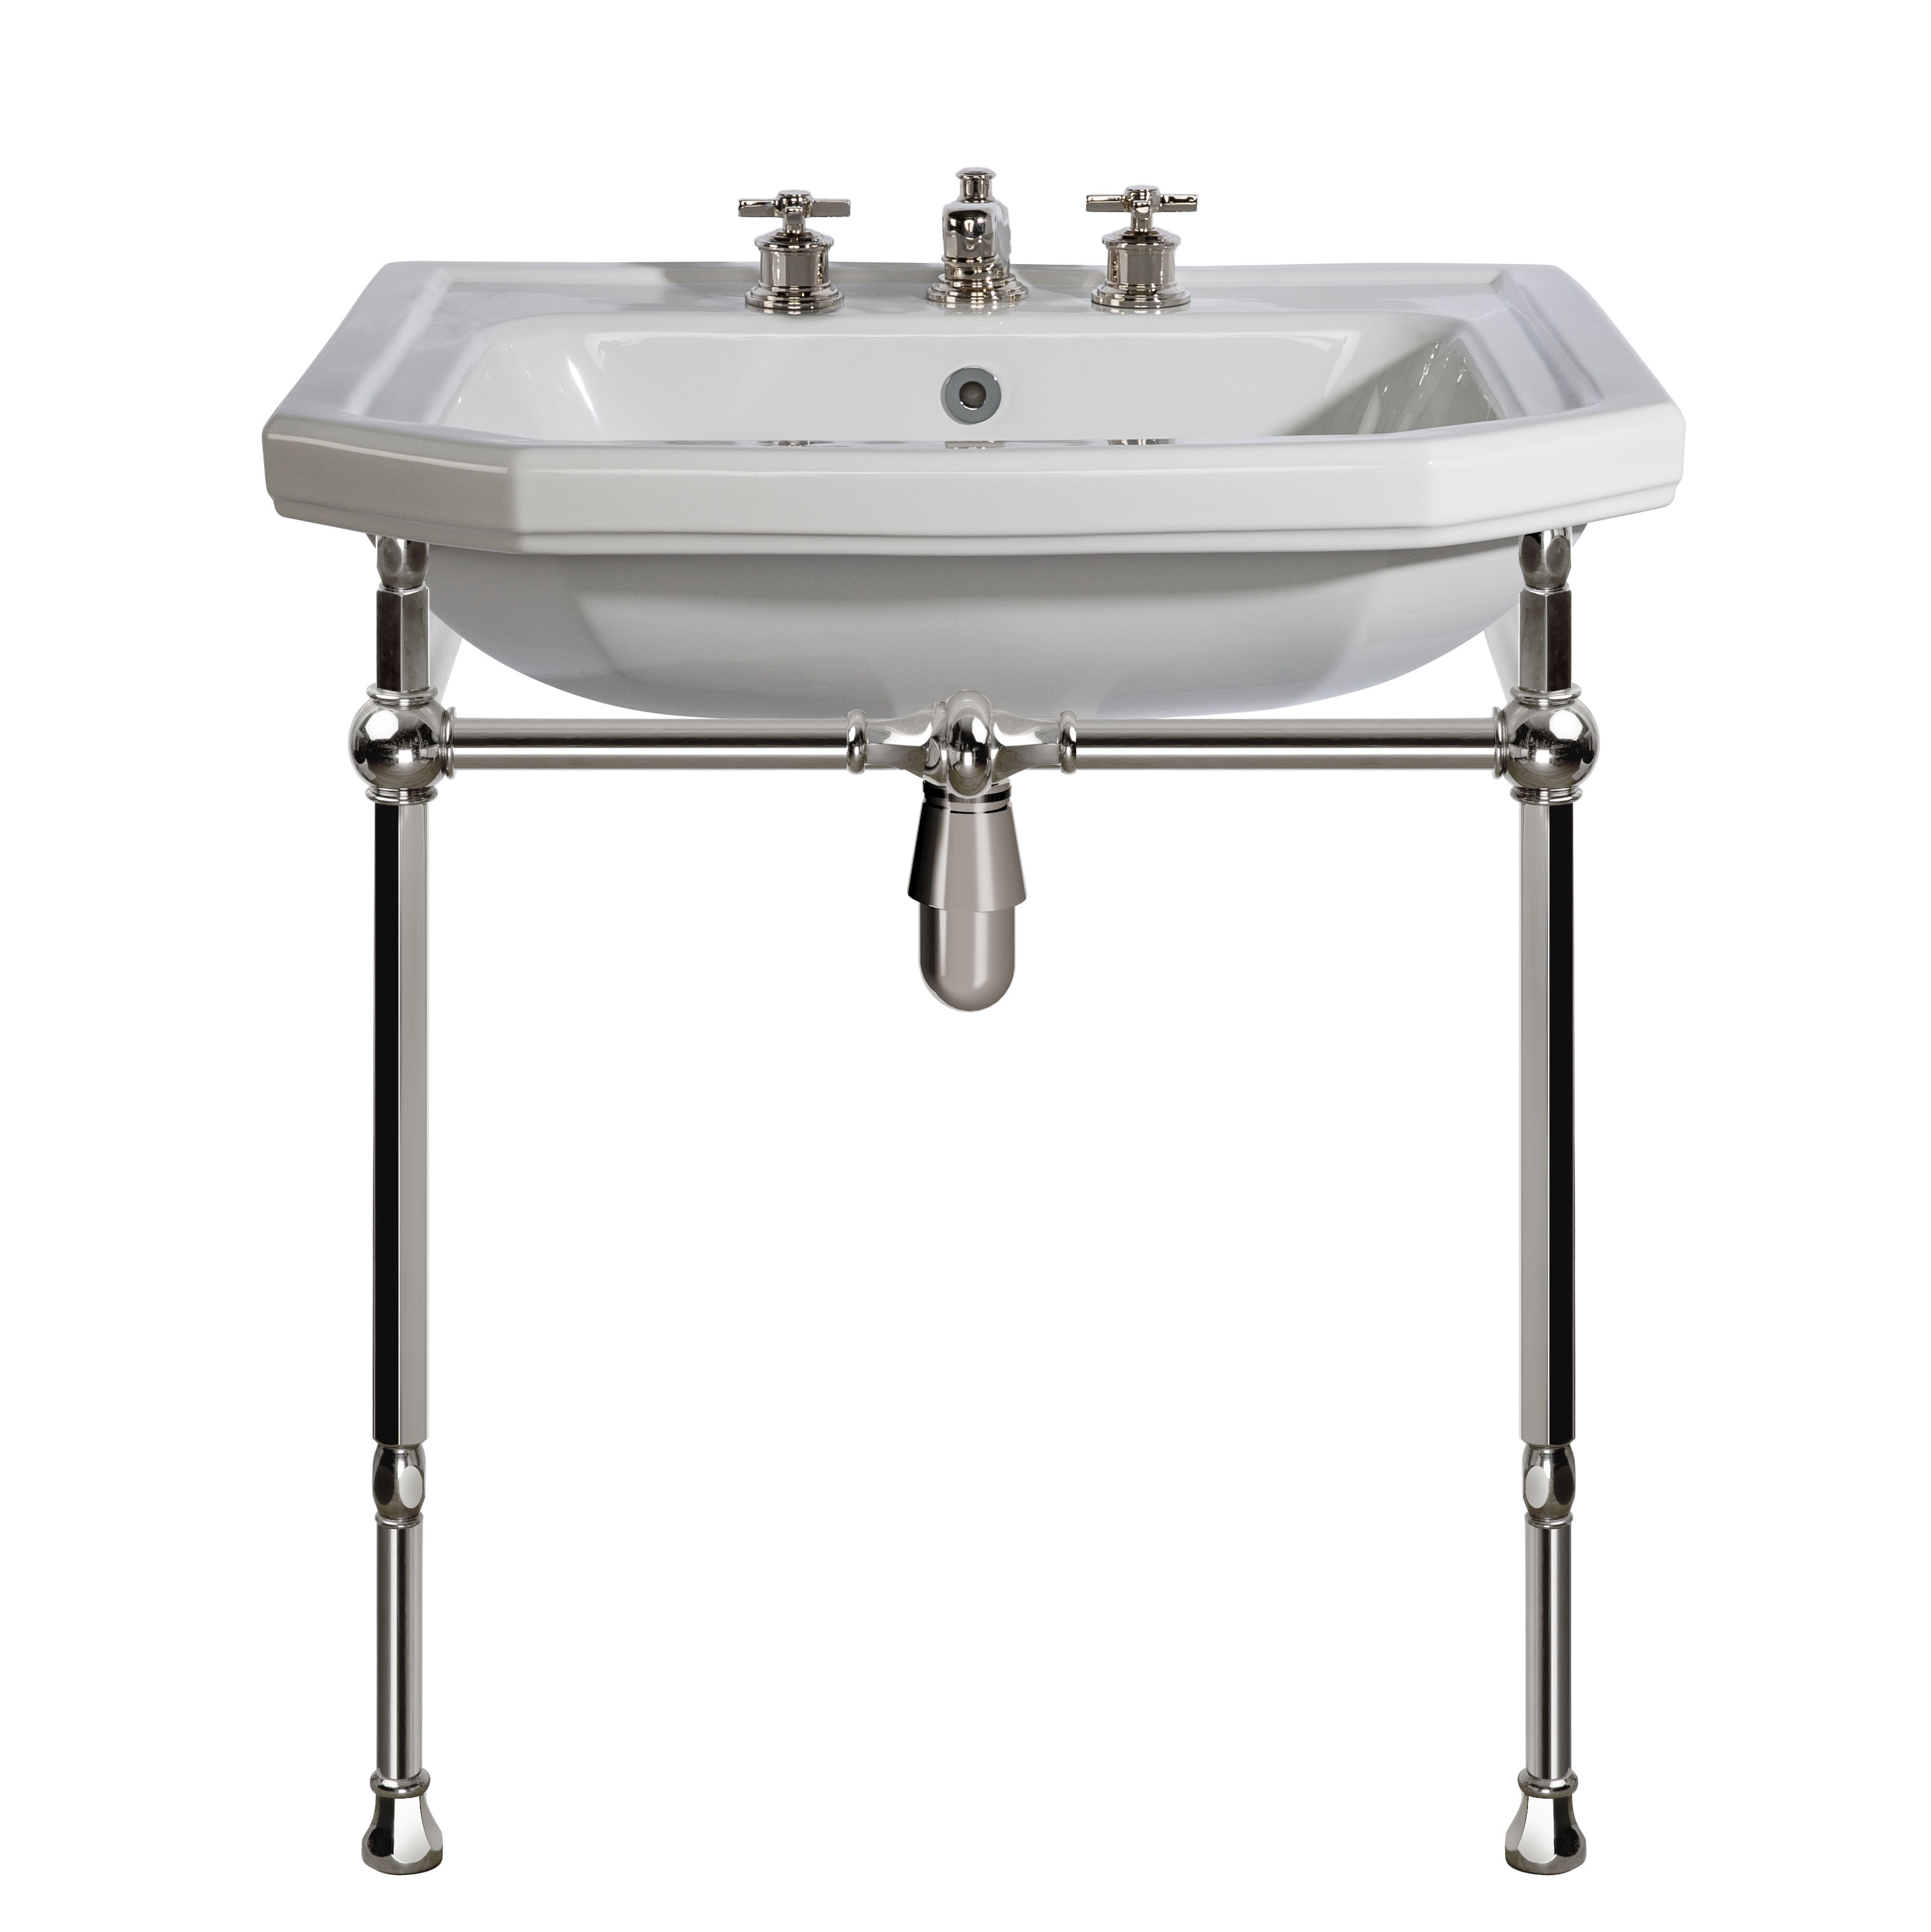 MS13-70-pietement-laiton Biarritz washbasin on brass washstand, L. 70cm